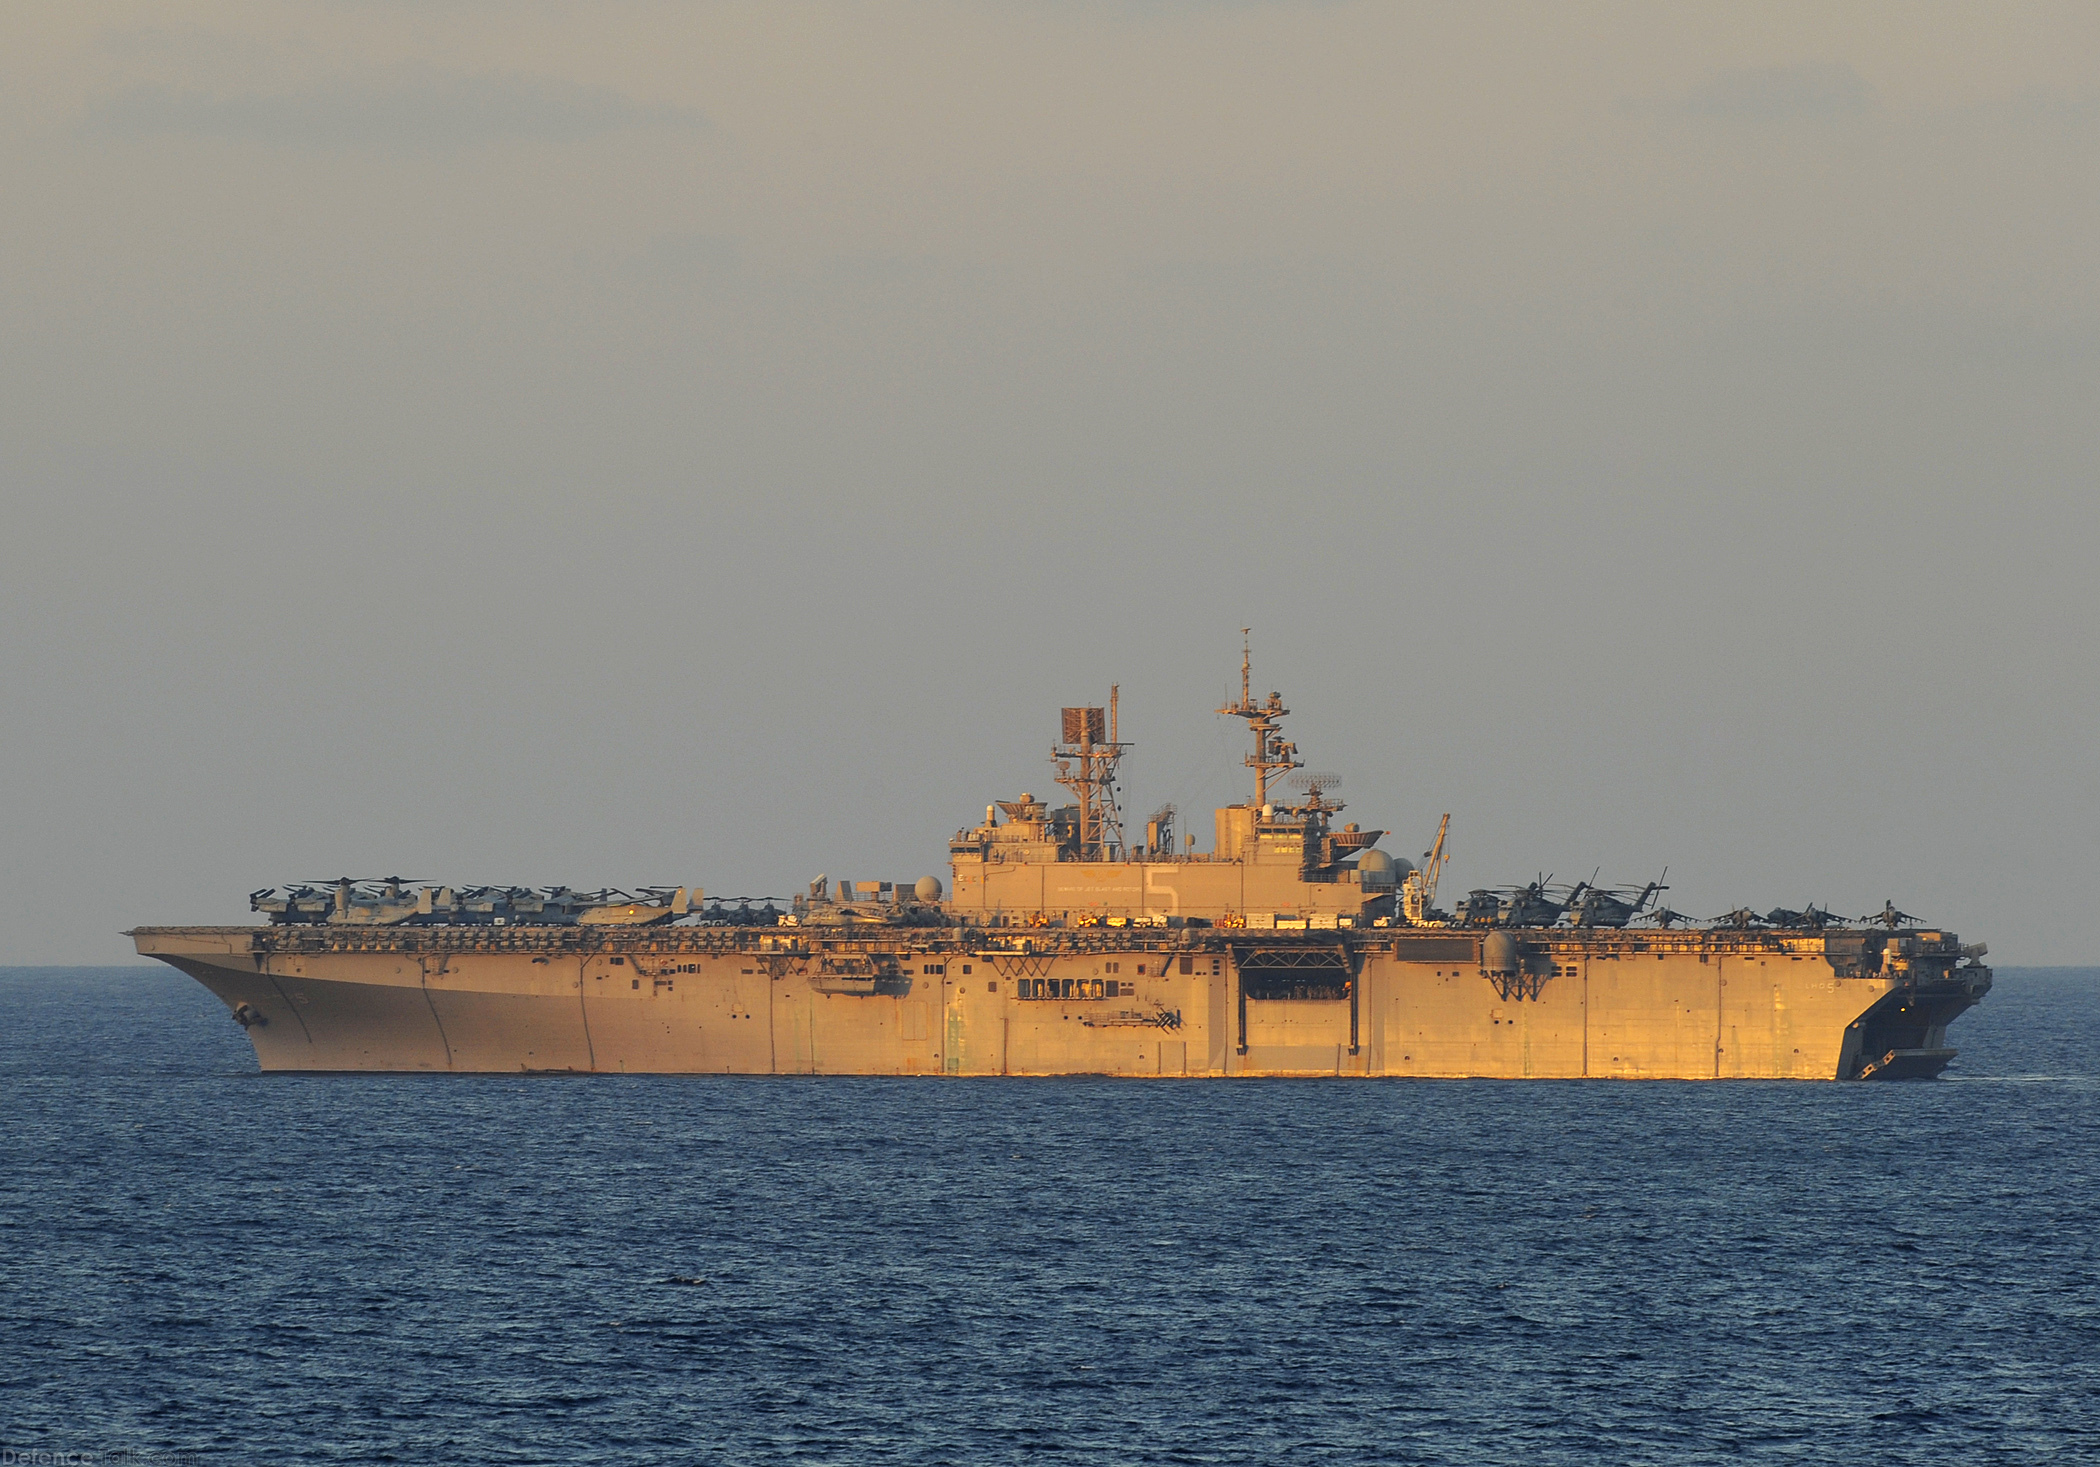 USS Bataan (LHD 5), amphibious assault ship during Bright Start 2009